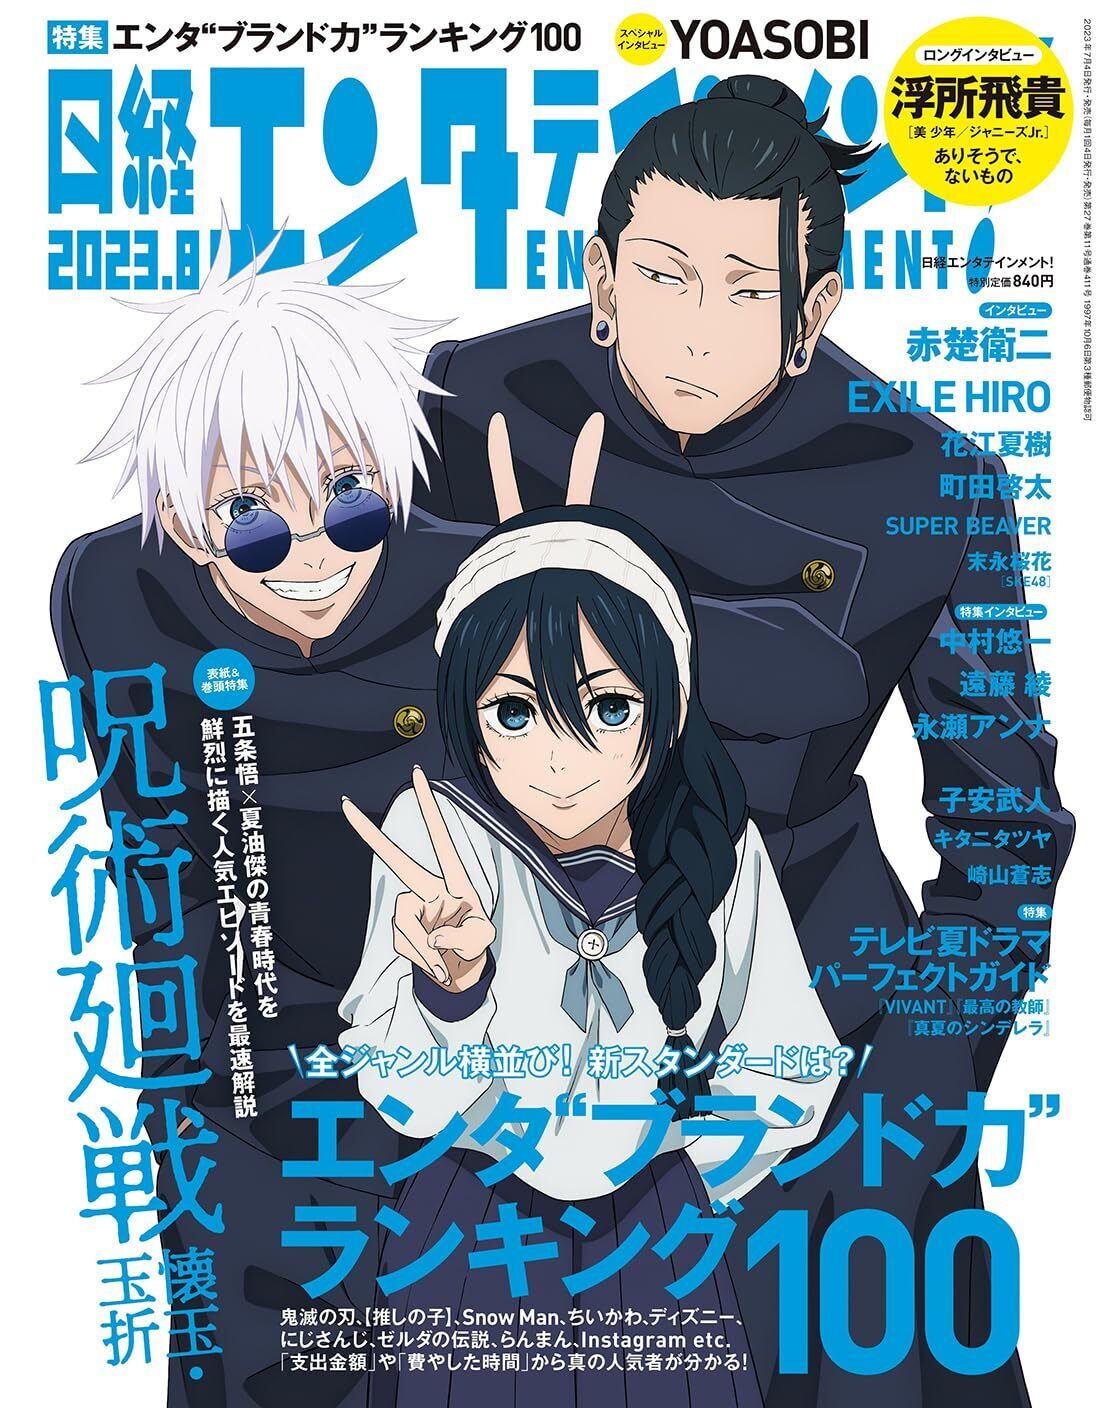 Nikkei Entertainment Aug 2023 Magazine anime Jujutsu kaisen New